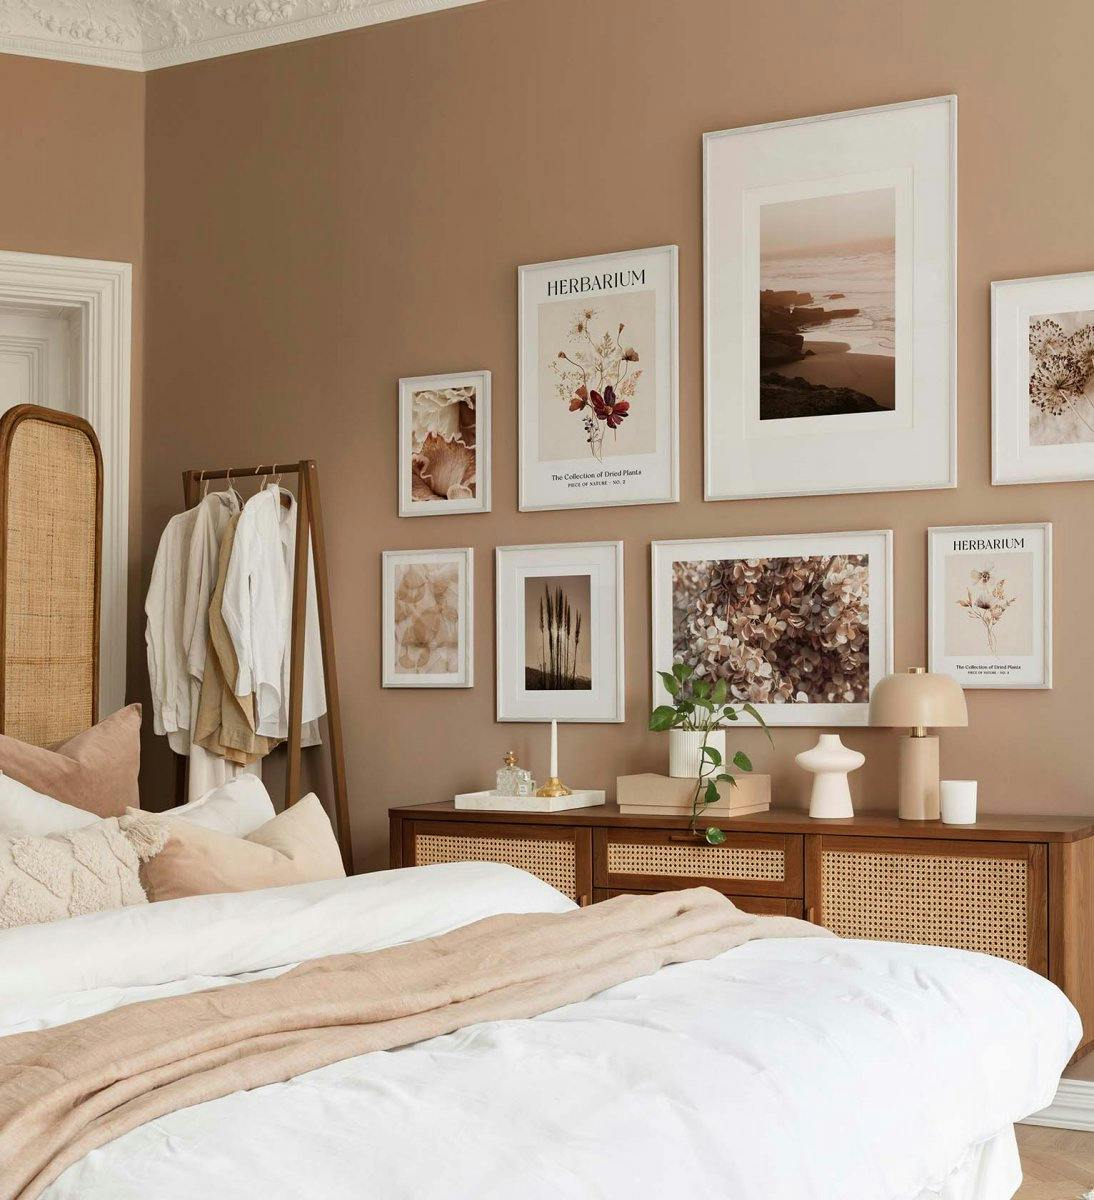 Pared de galería botánica y cercana a la naturaleza en colores marrón y beige con marcos de madera blanca para el dormitorio